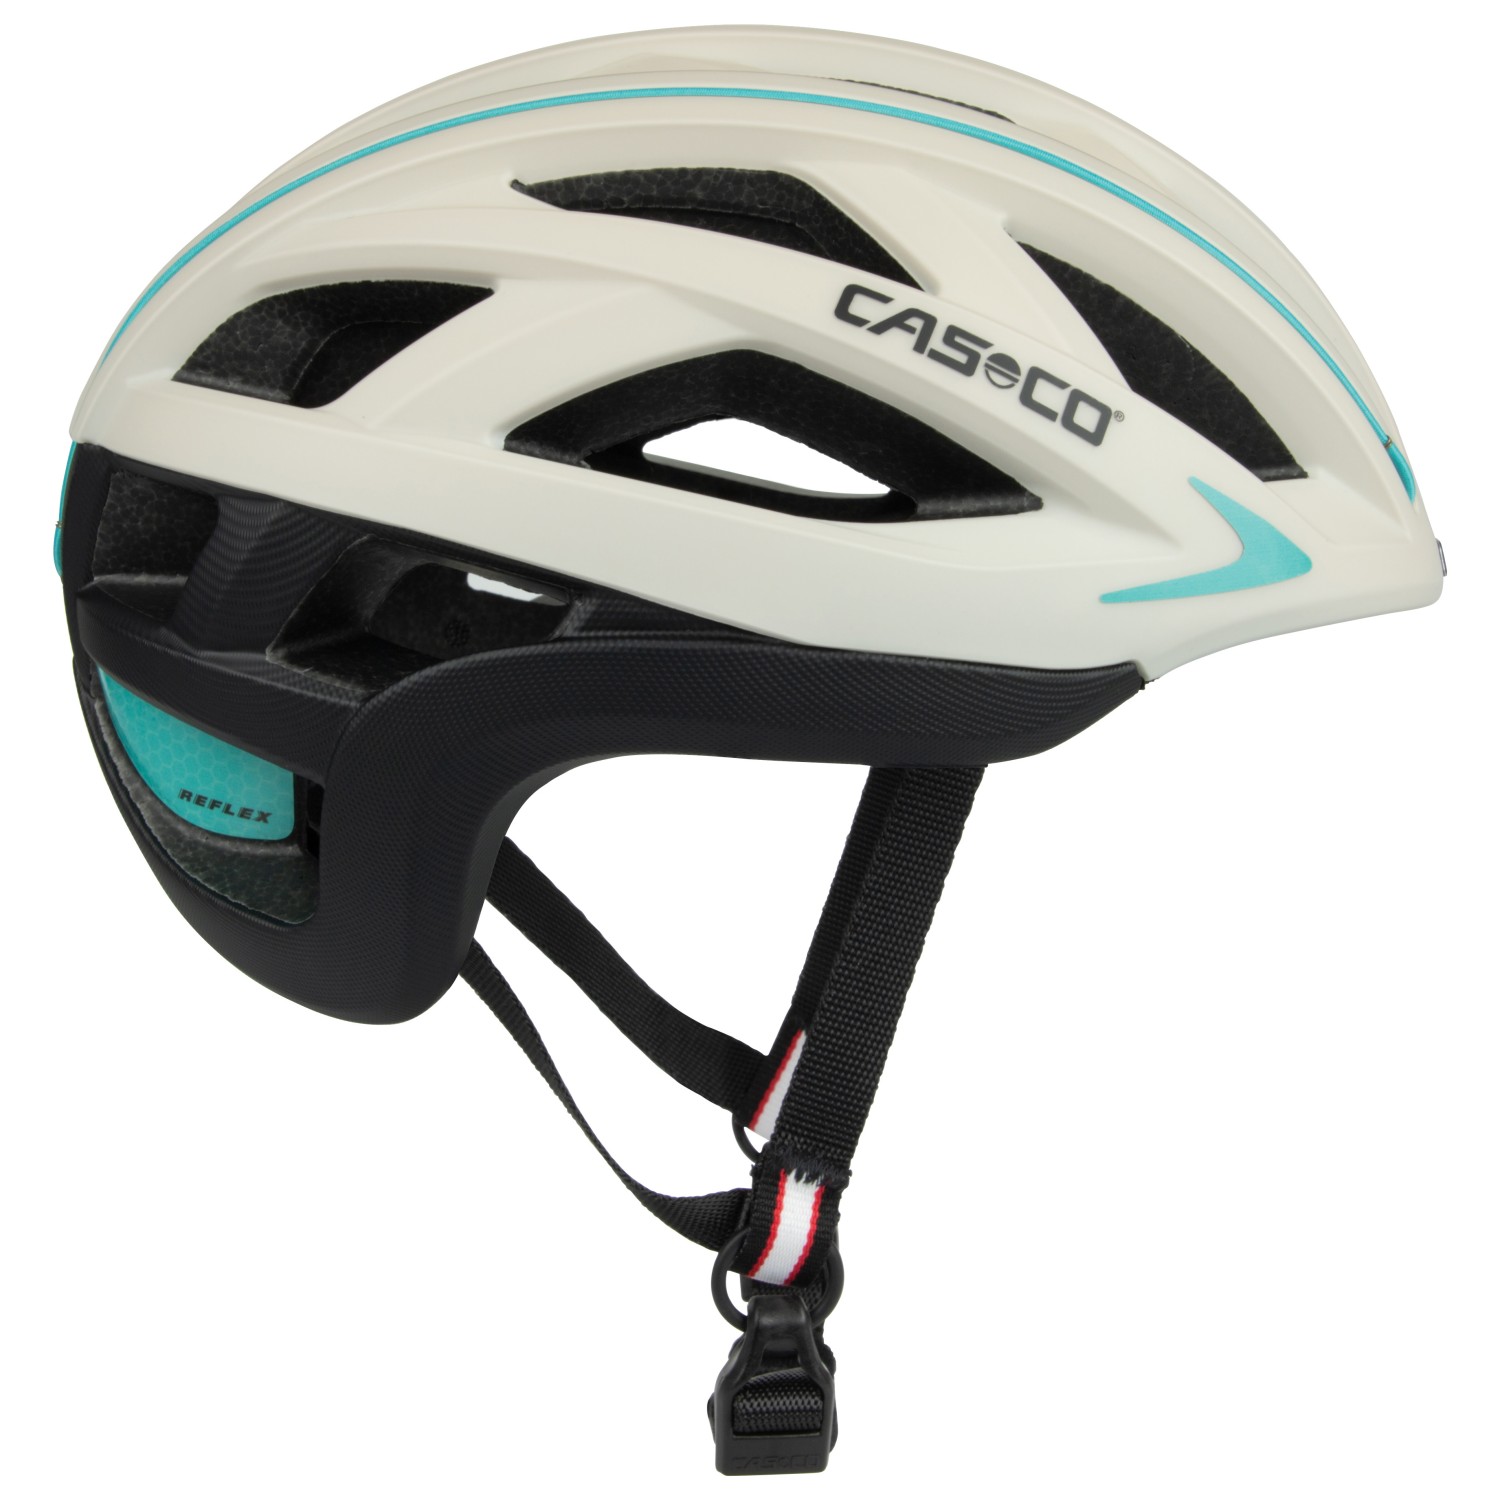 Велосипедный шлем Casco Cuda 2 Strada, цвет White/Turquise/Black велосипедный шлем casco cuda 2 04 1634 l